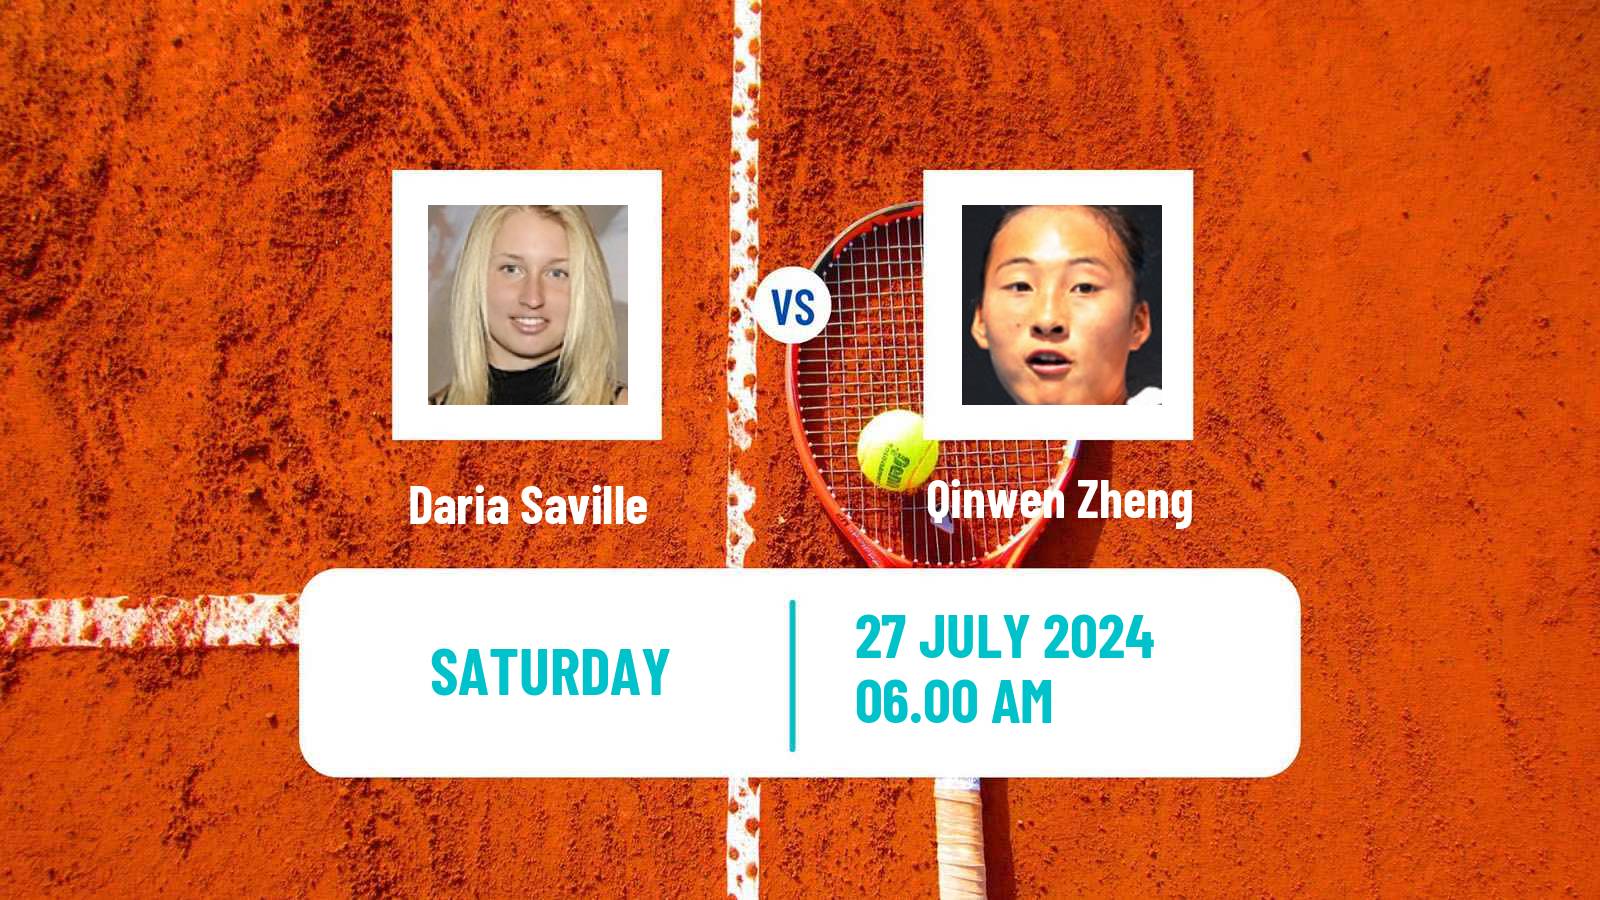 Tennis WTA Olympic Games Daria Saville - Qinwen Zheng